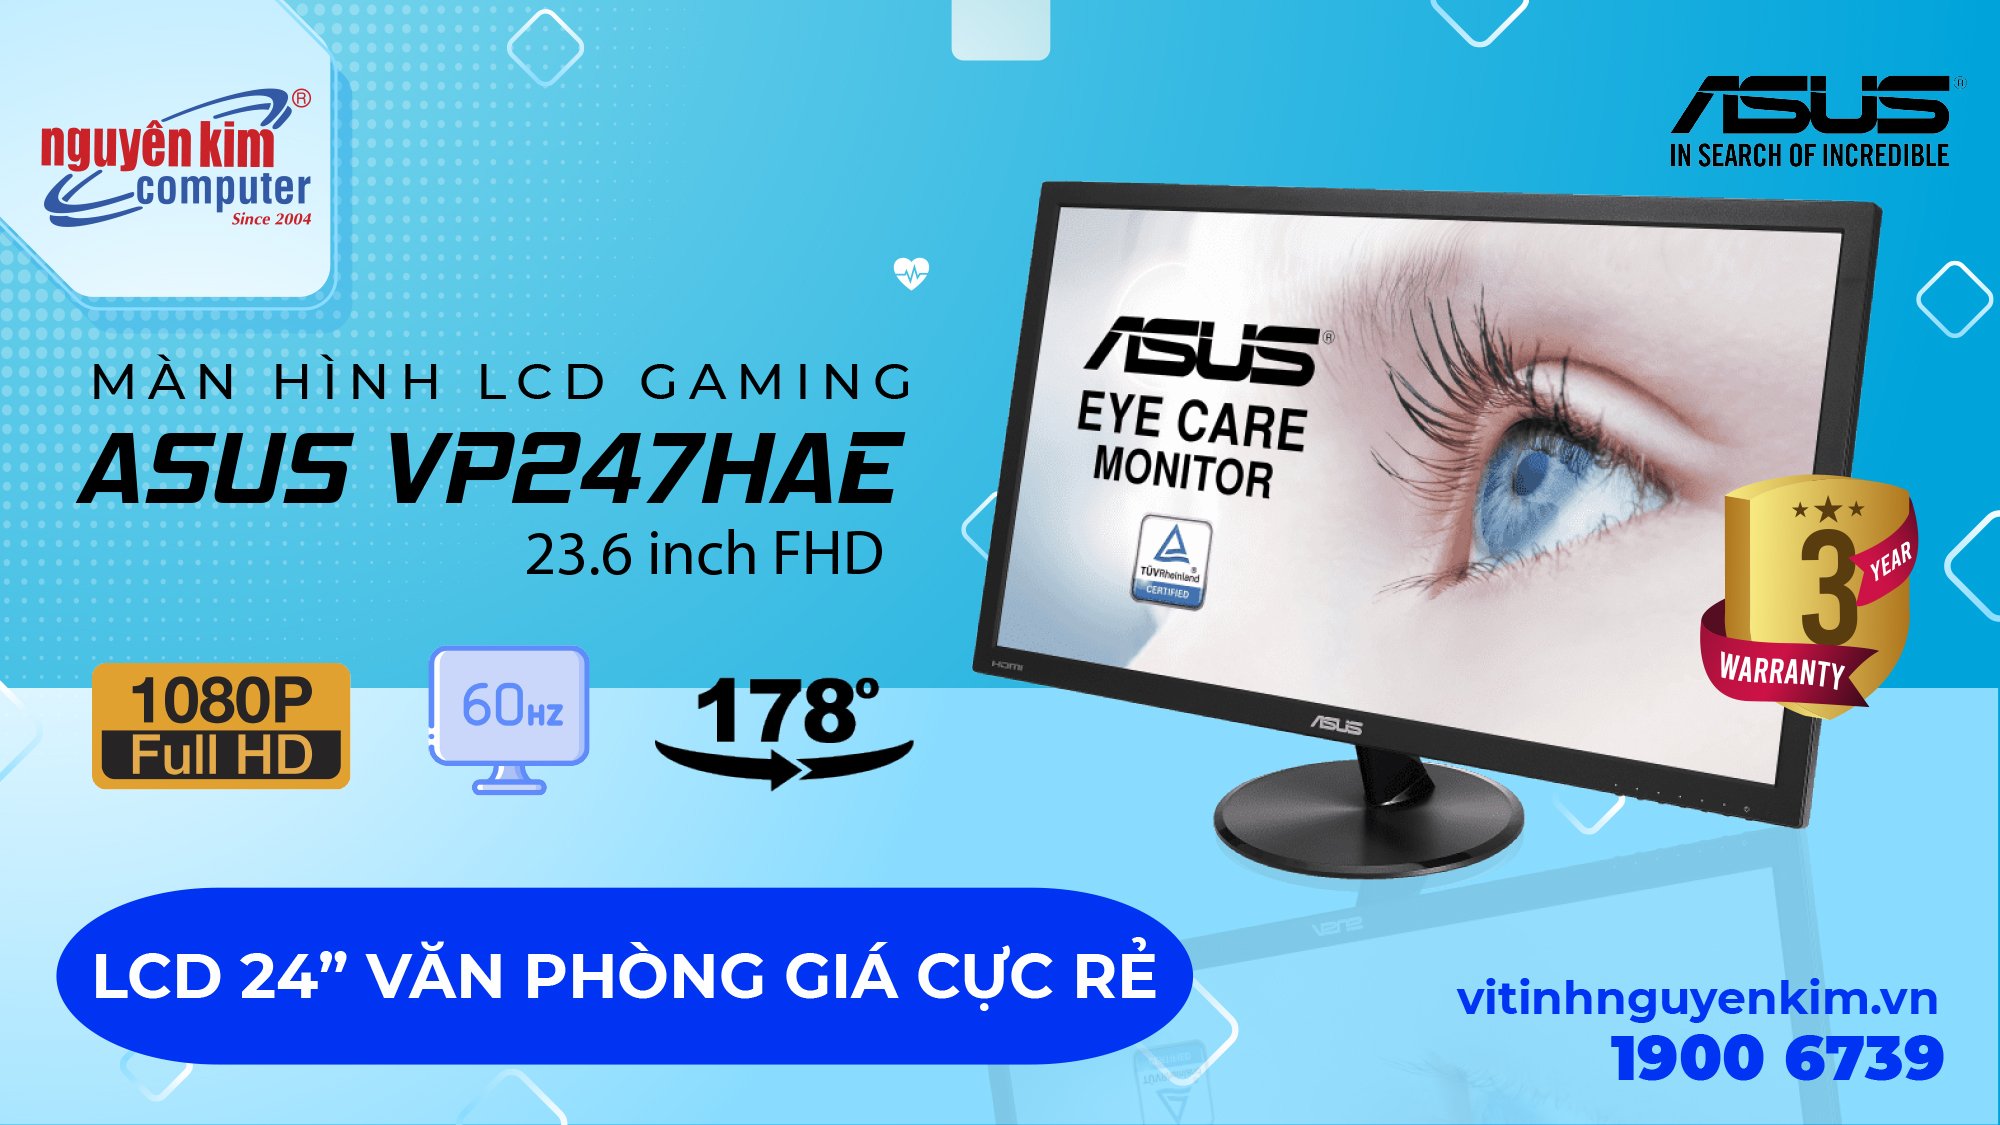 Màn hình LCD bảo vệ mắt Asus VP247HAE